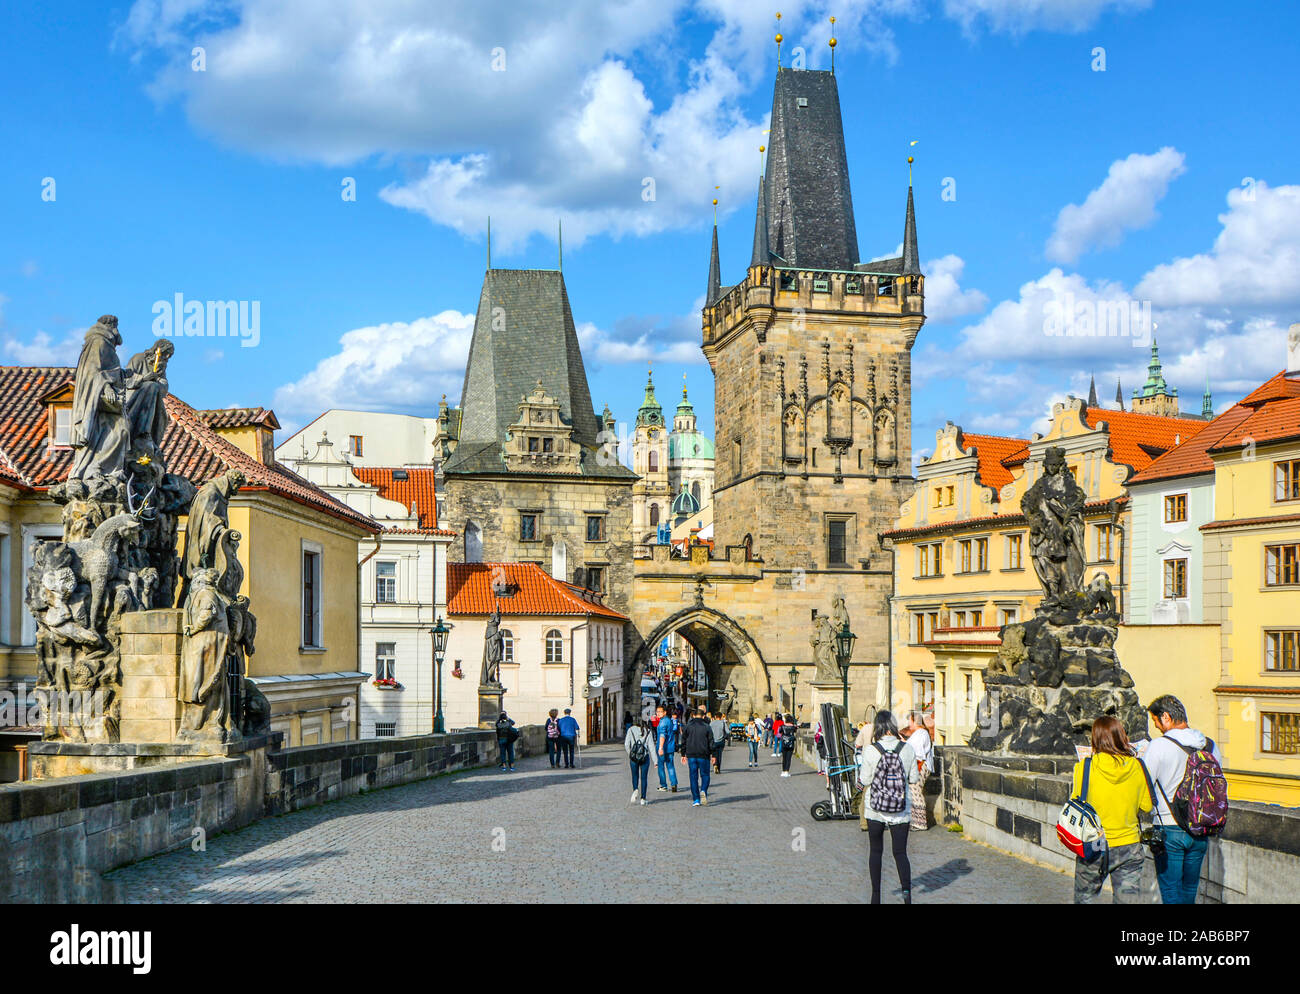 Touristen überqueren Sie die Karlsbrücke auf dem Weg der Könige, die zu den kleineren Turm auf dem Weg zur Prager Burg. Stockfoto